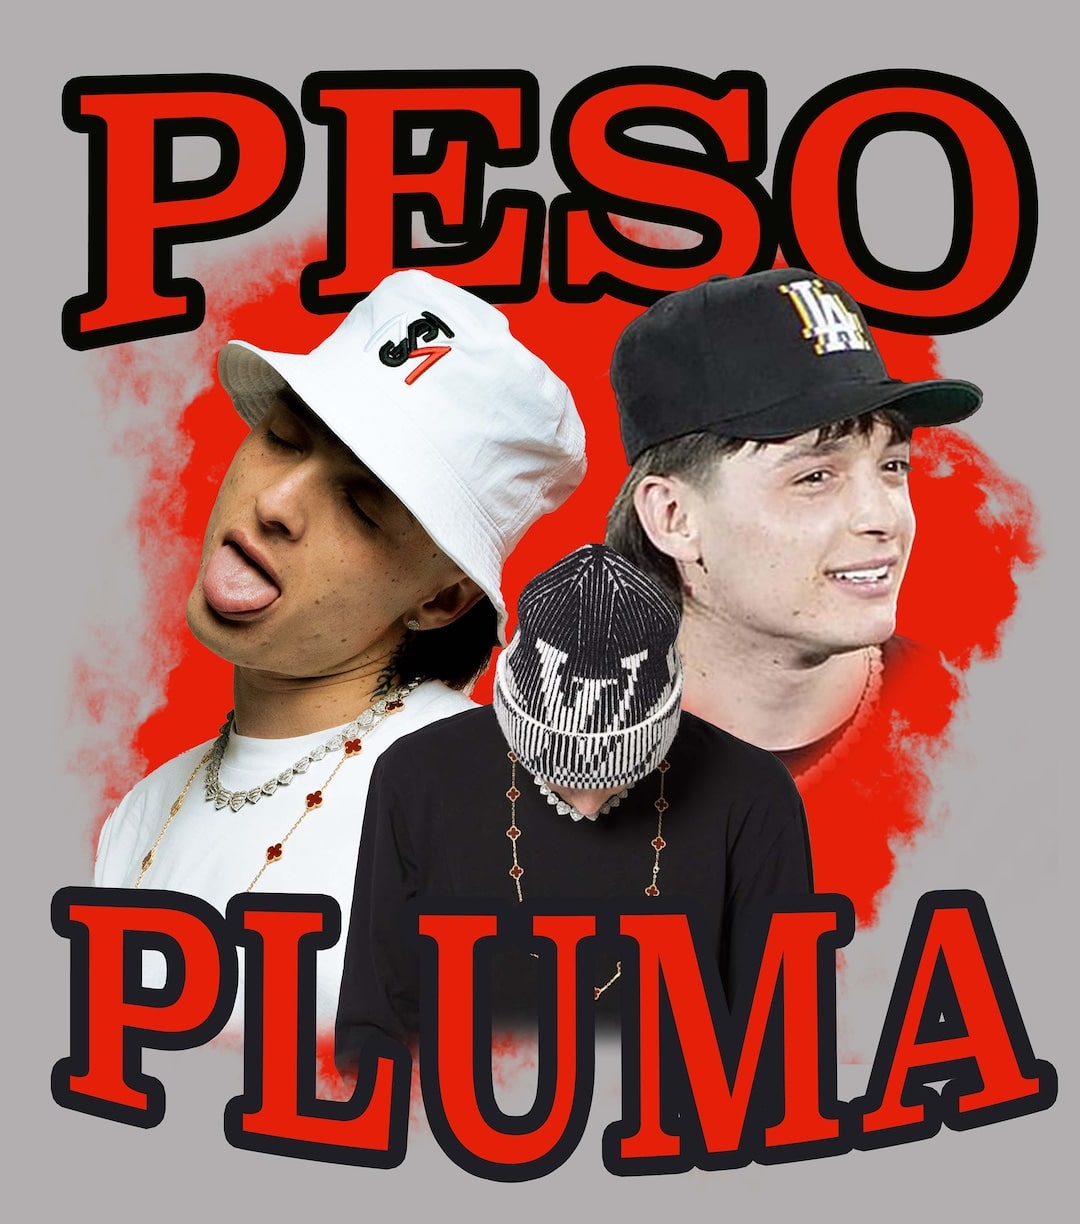 Background Peso Pluma Wallpaper